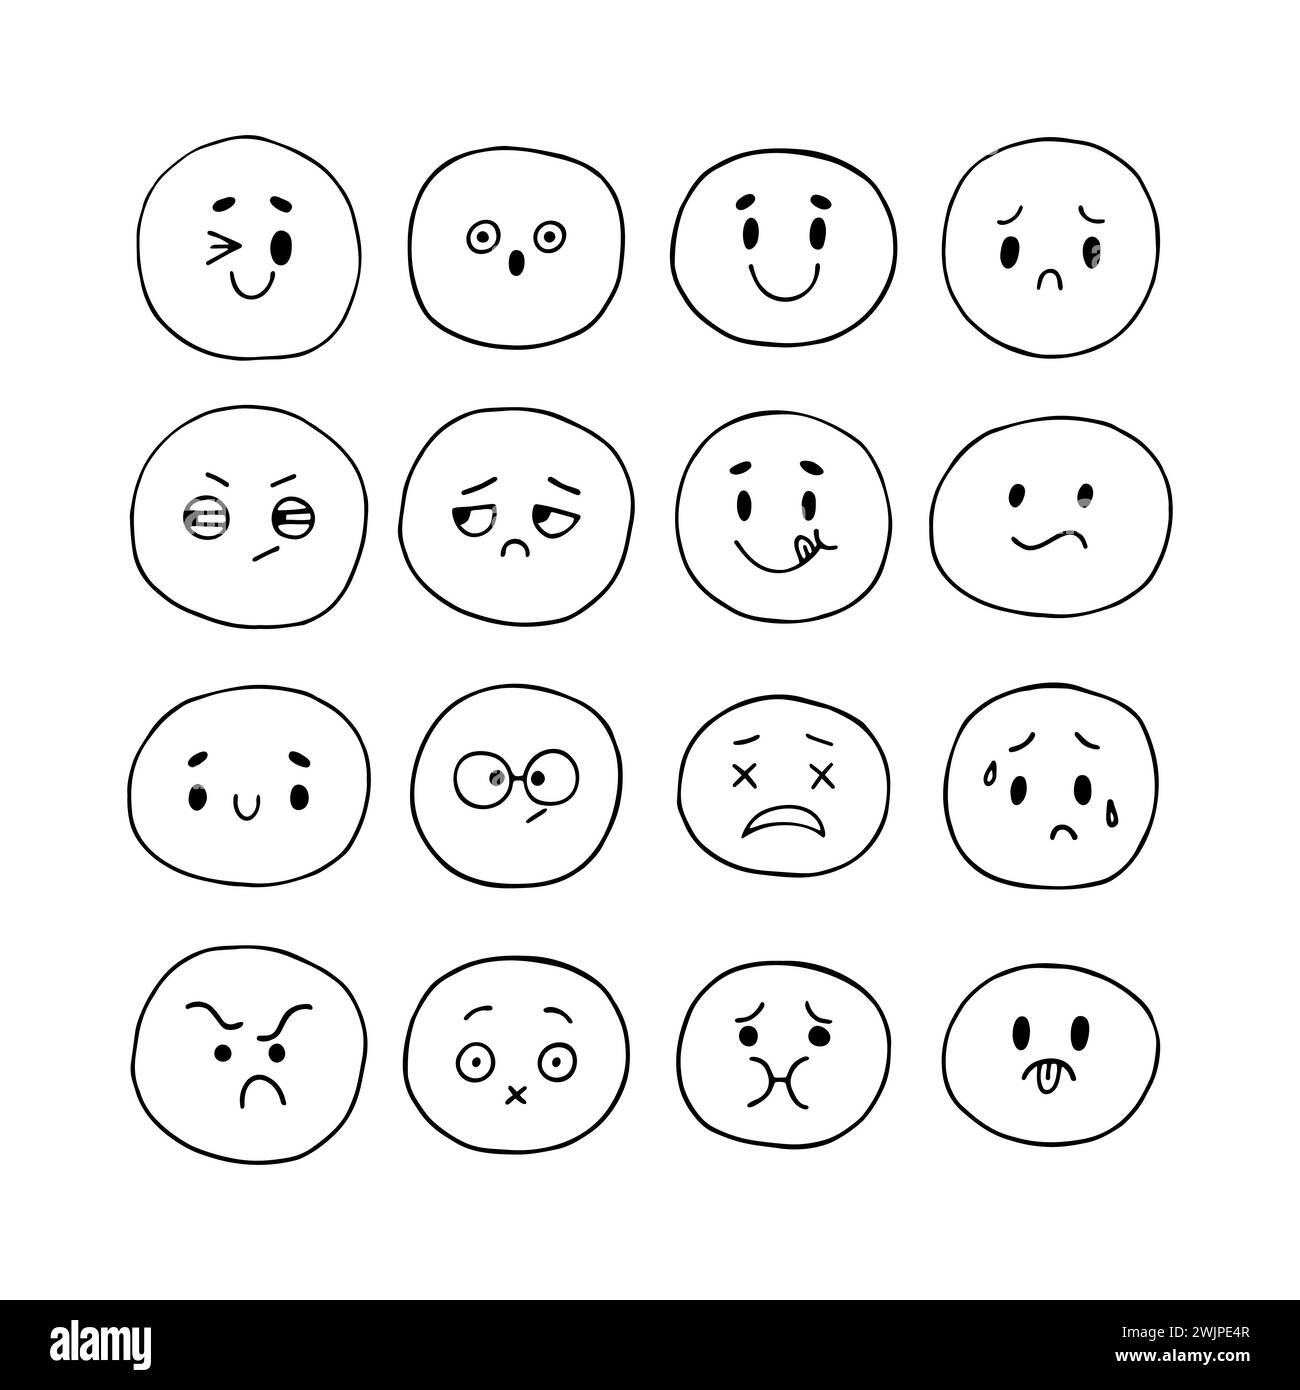 Facce sorridenti e divertenti disegnate a mano felice. Icone emoji. Set di espressioni facciali di schizzo. Stile Kawaii. Collezione di personaggi emozionali dei cartoni animati. Il vettore Illustrazione Vettoriale